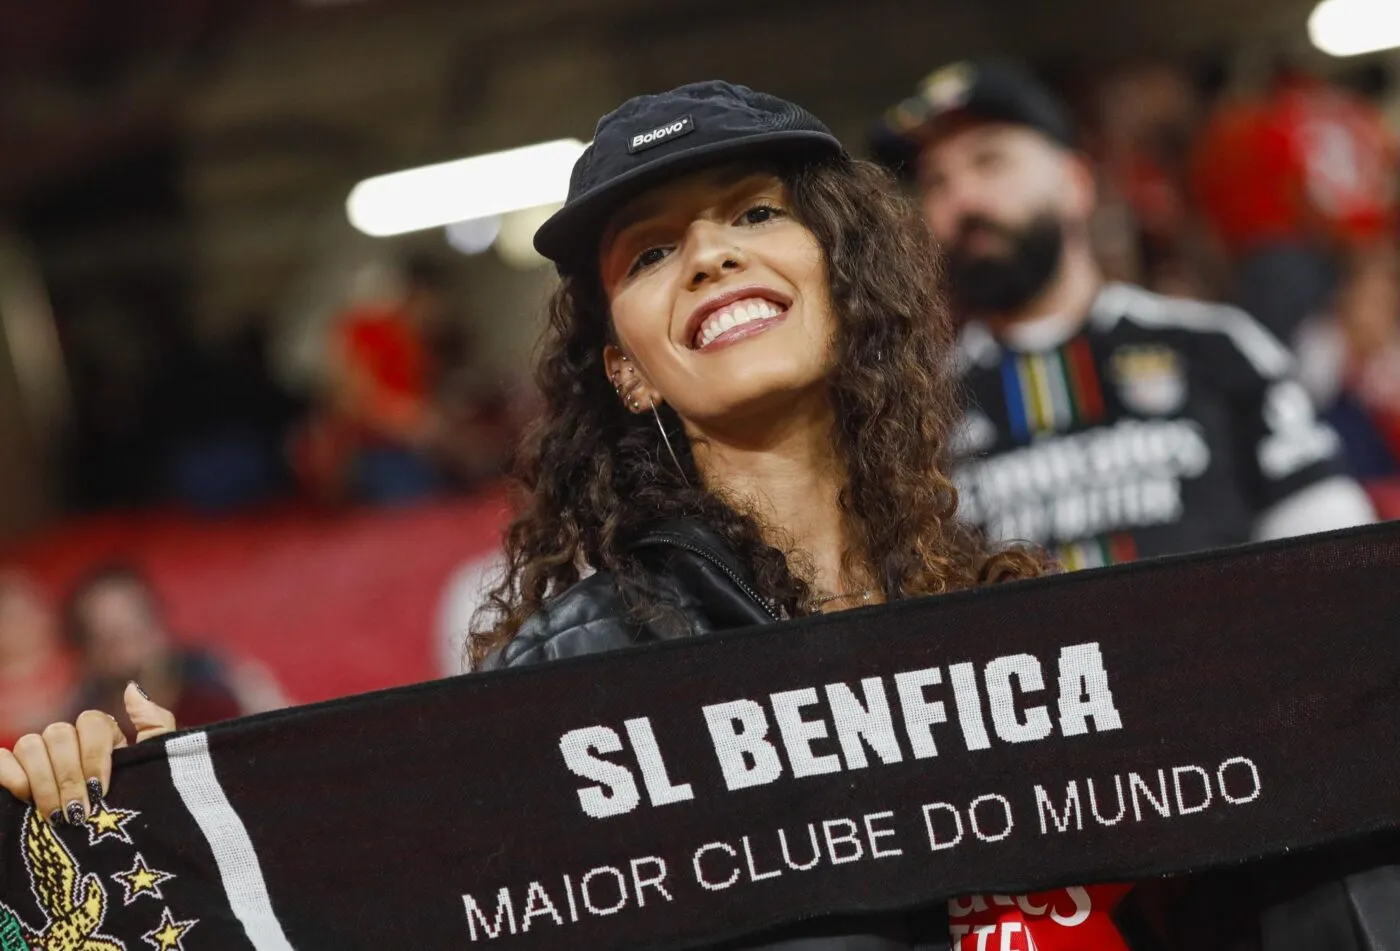 Des supporters du Benfica exflitrés d’un Burger King sur la Canebière